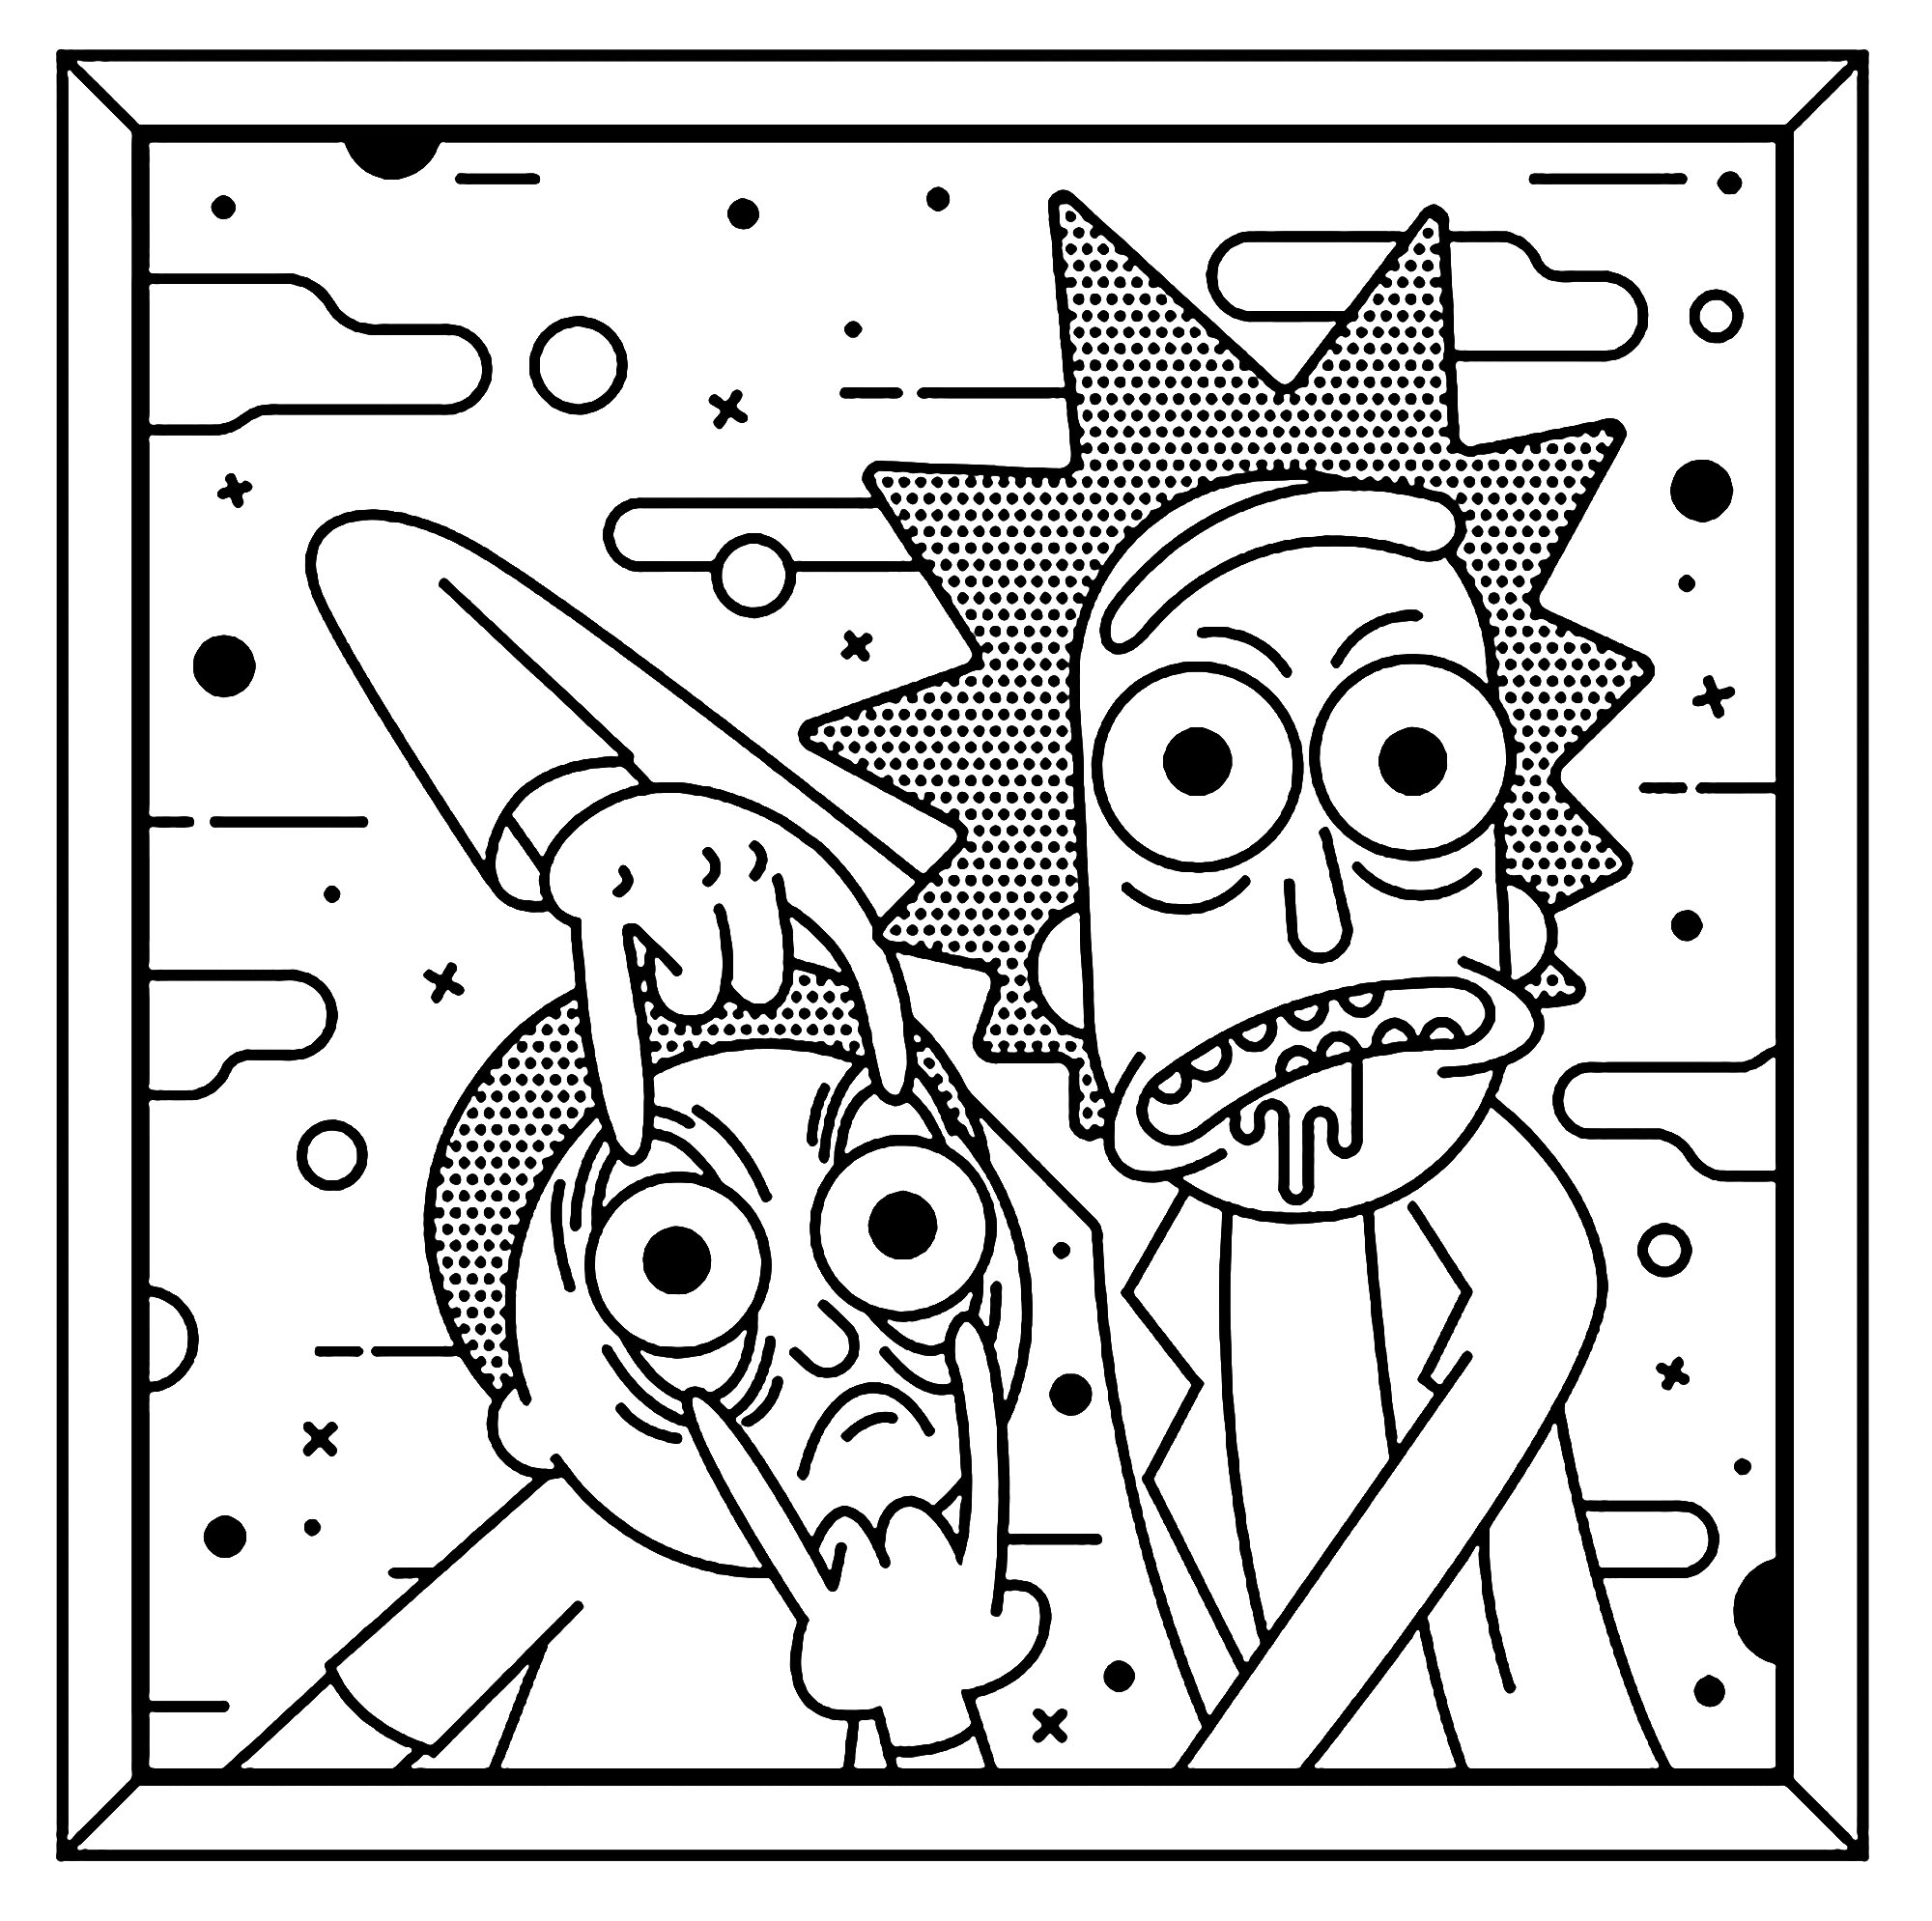 Gosta de Pop Art? As duas personagens principais, Rick e Morty, são retratadas num estilo muito caraterístico de Roy Lichtenstein.